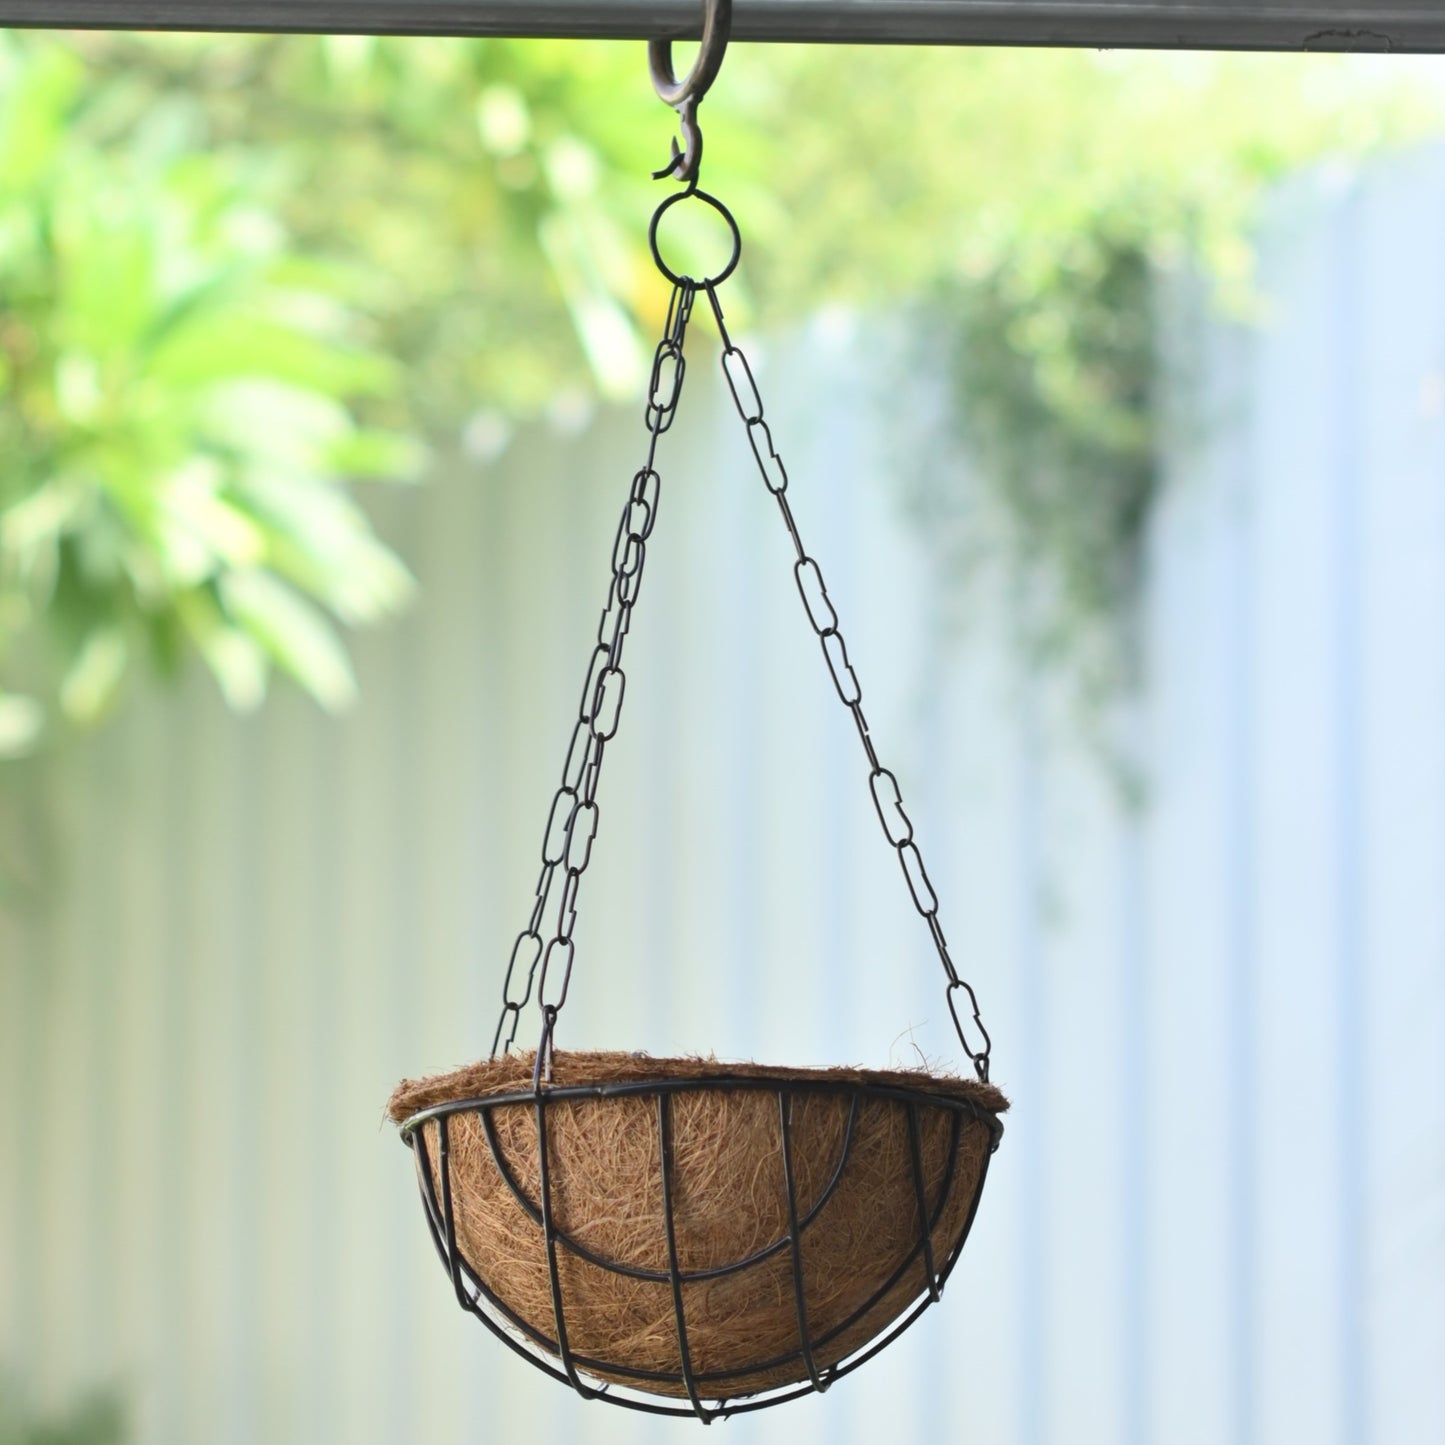 Hanging Coir Basket for Indoor/Outdoor